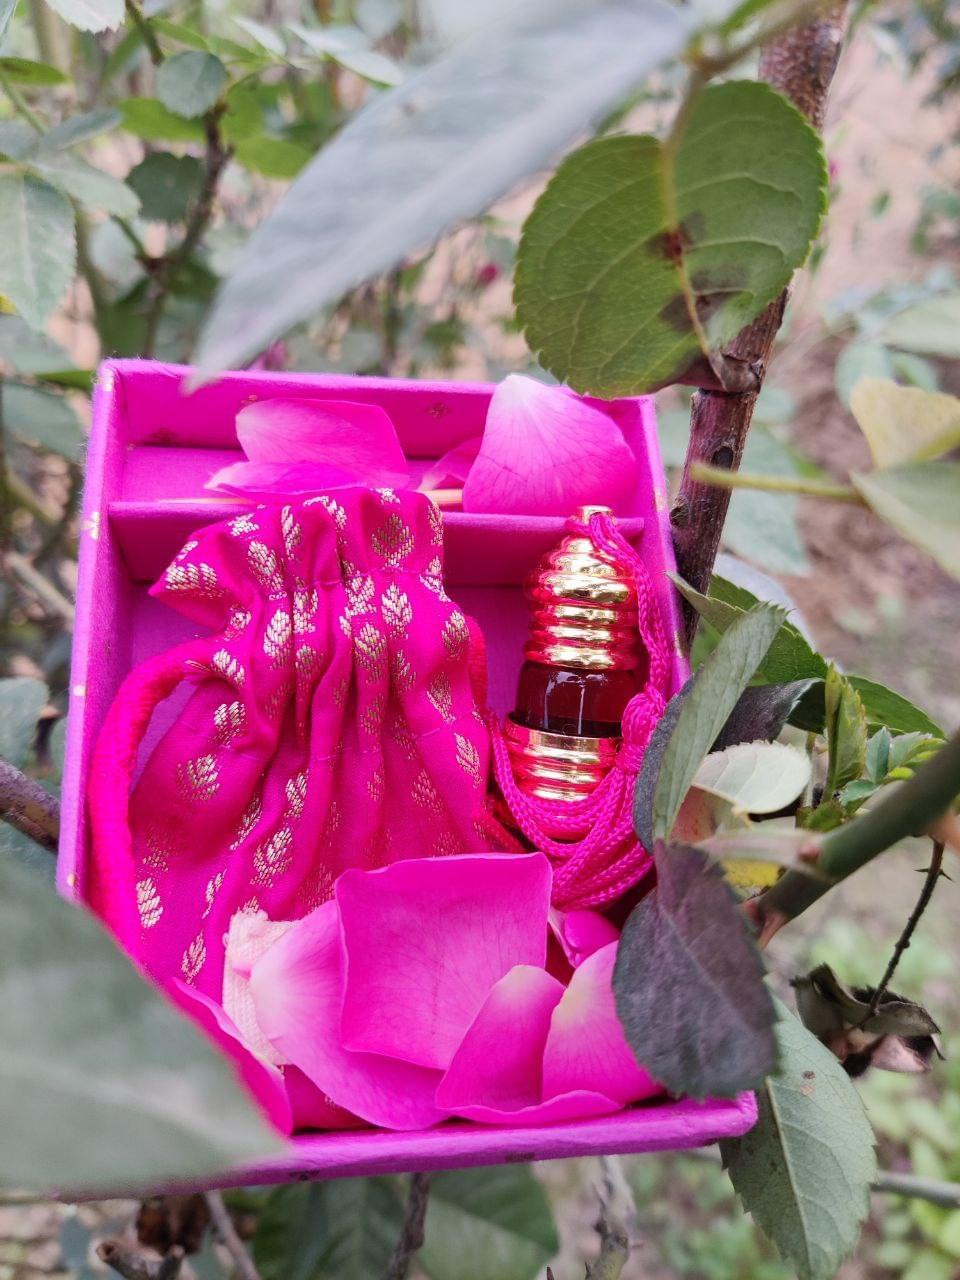 Gulabi (Indian Rose)